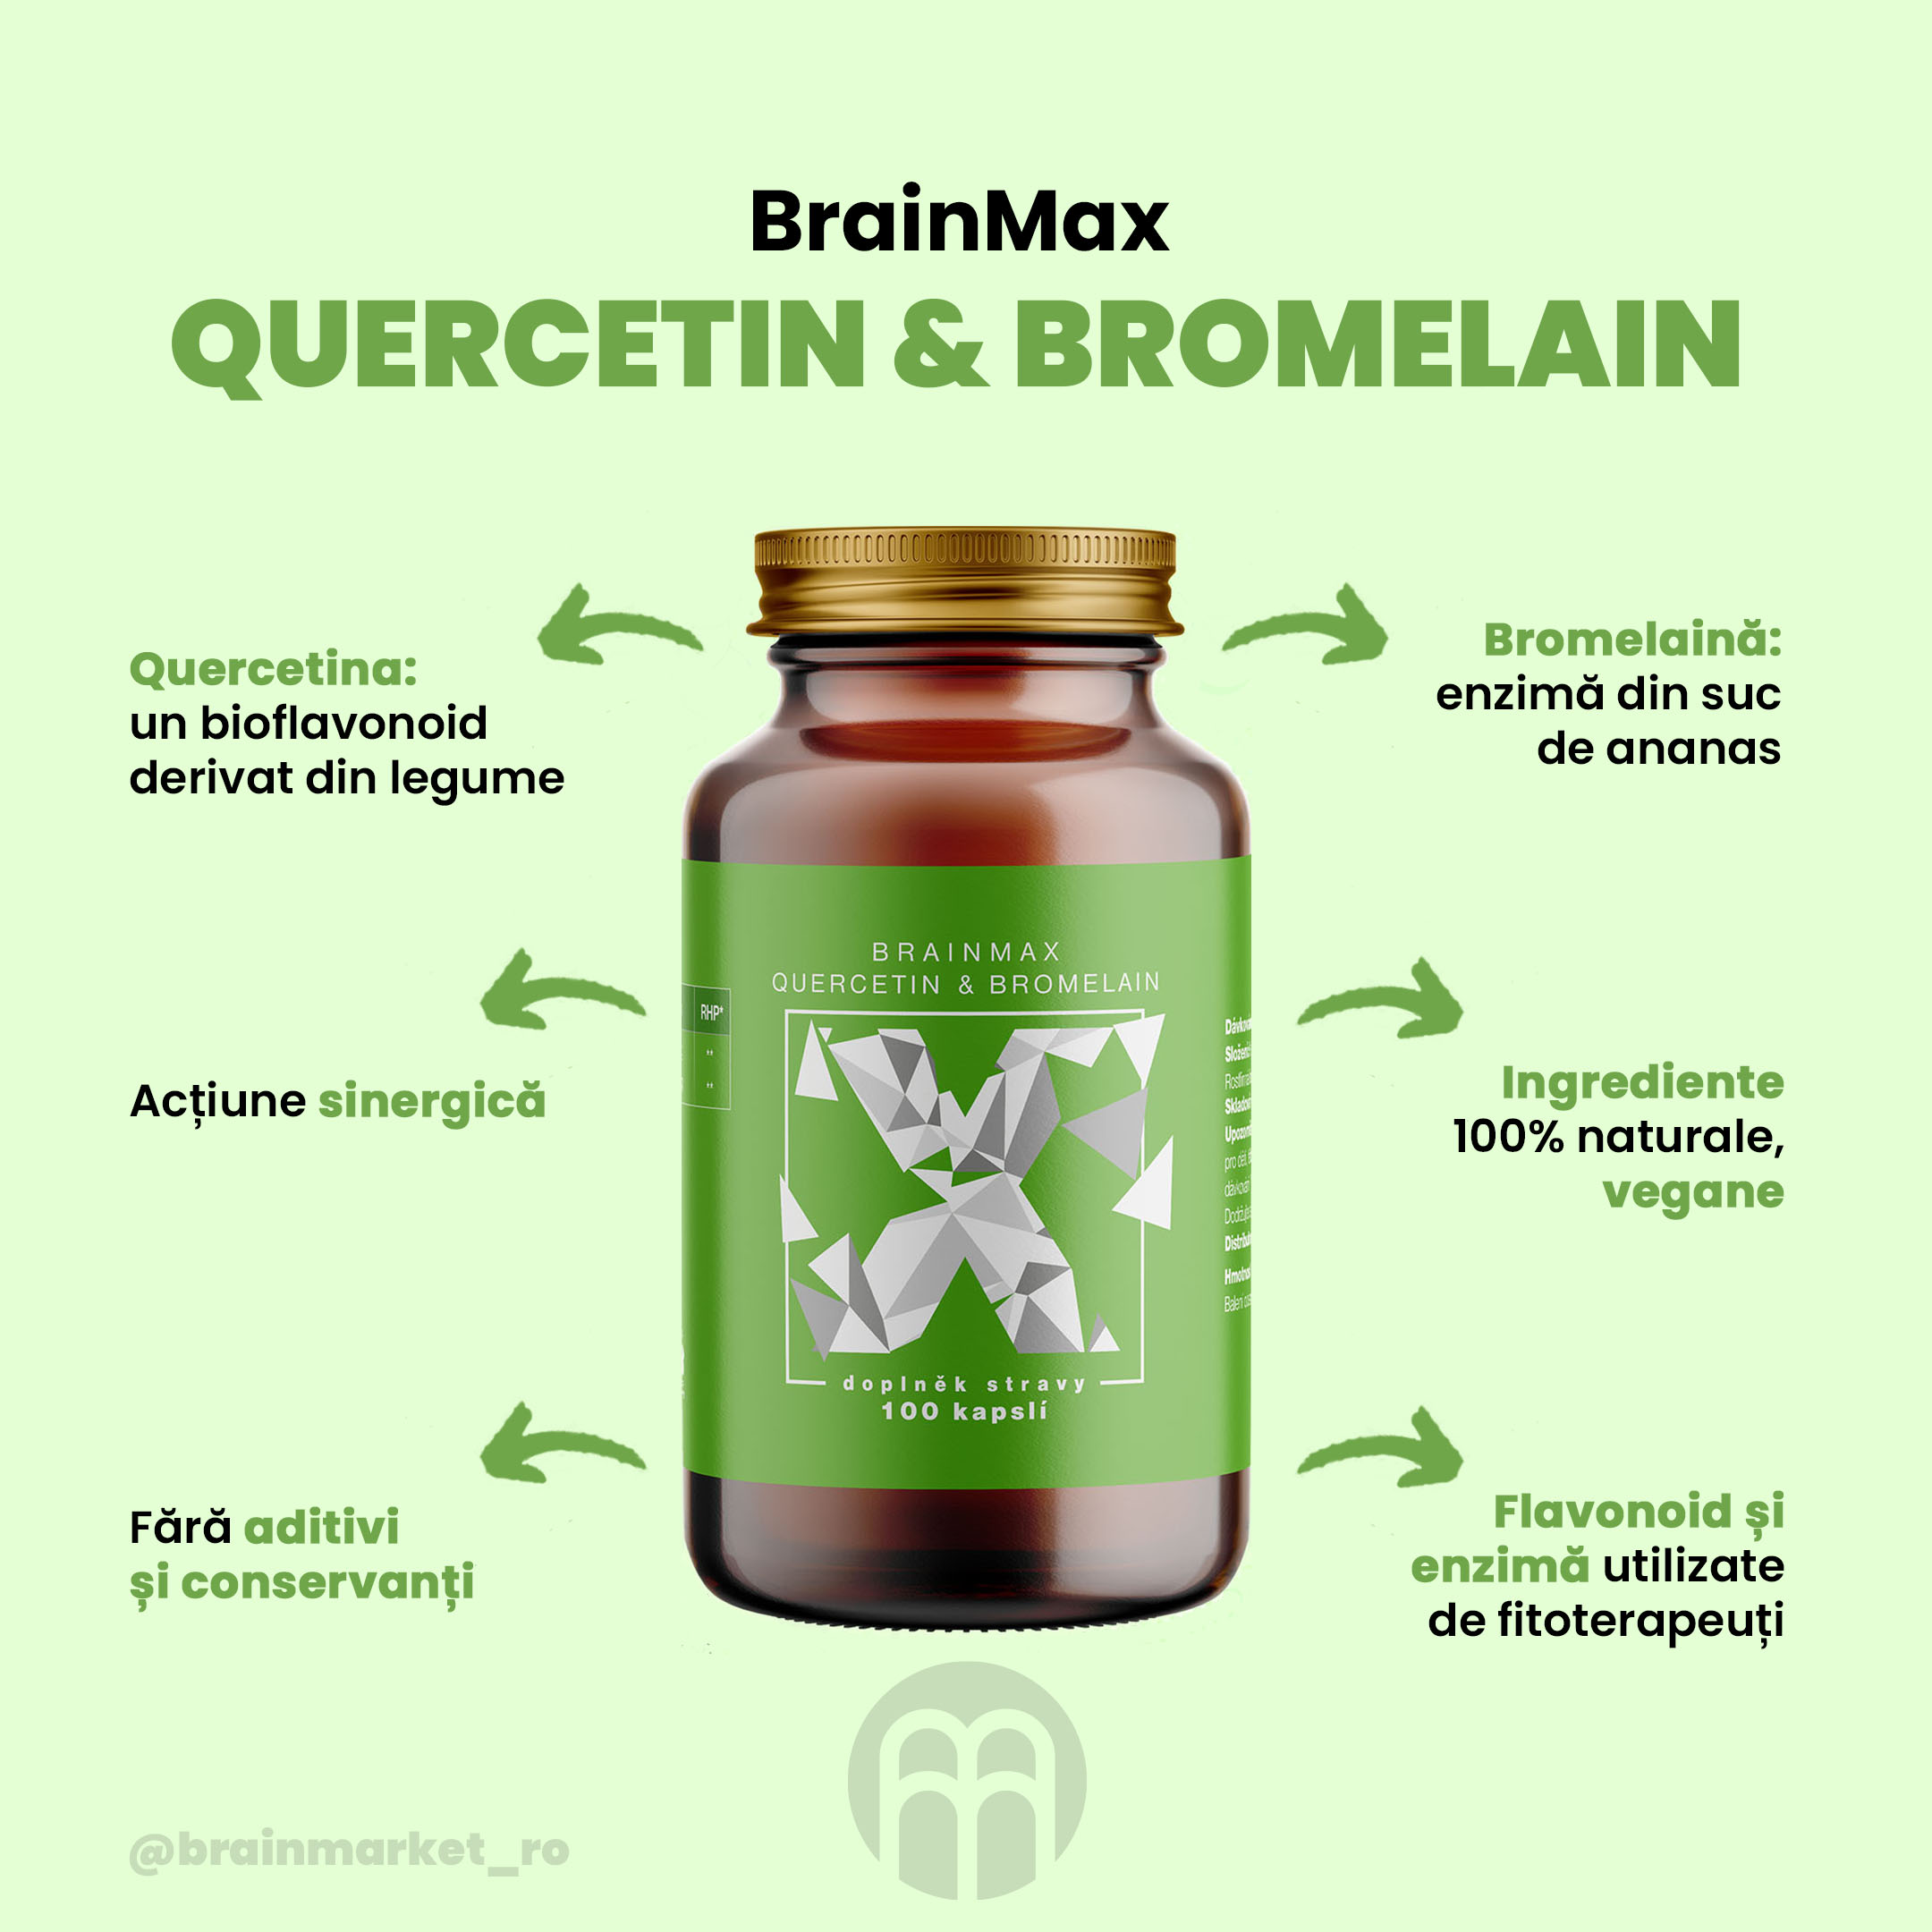 BrainMax Quercetin & Bromelain